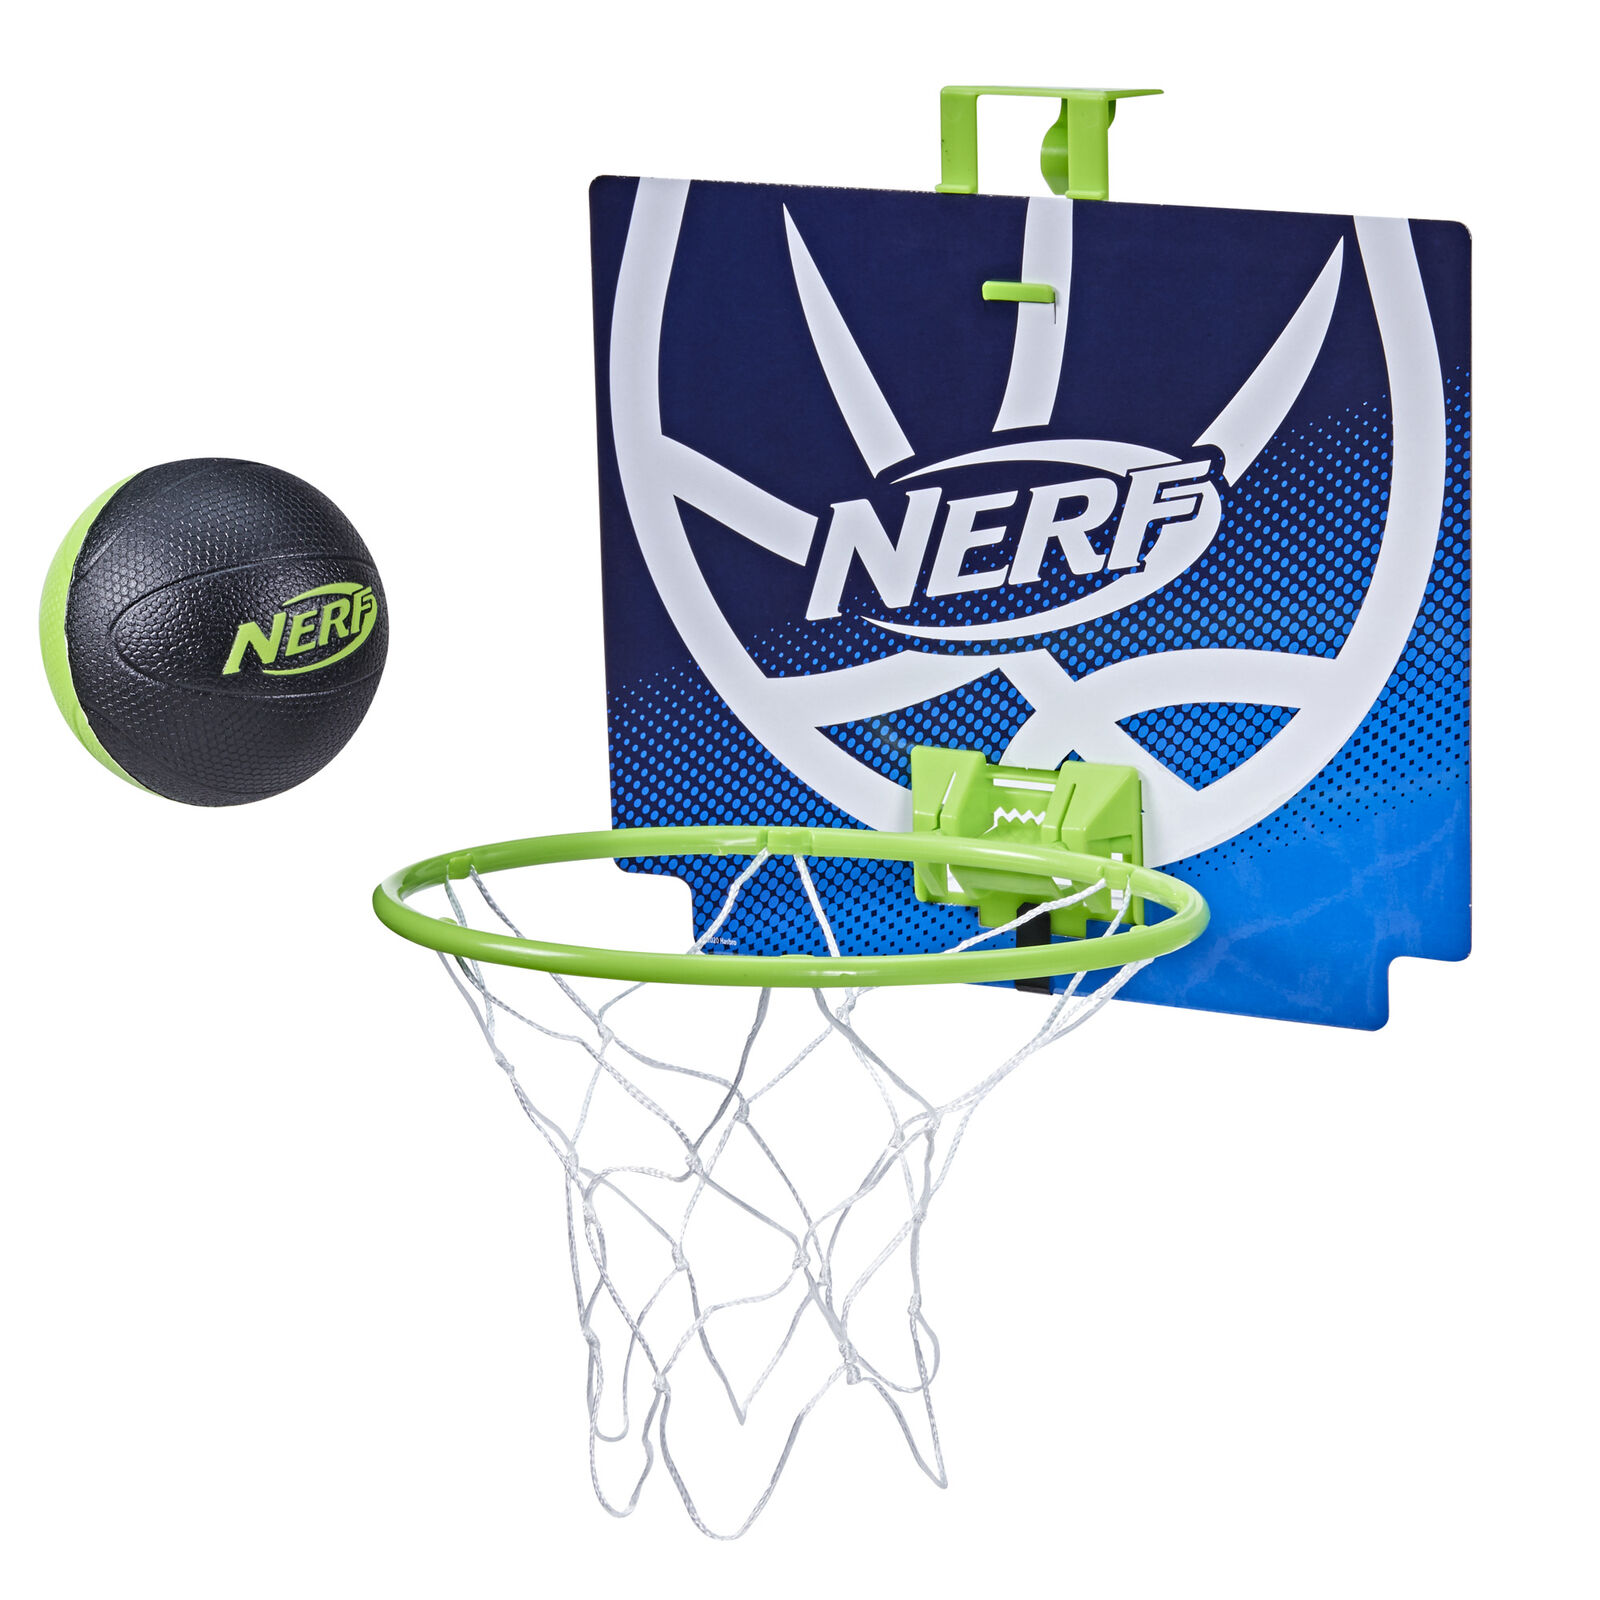 Nerf Nerfoop, The Classic Mini Foam Basketball and Hoop, Hooks O